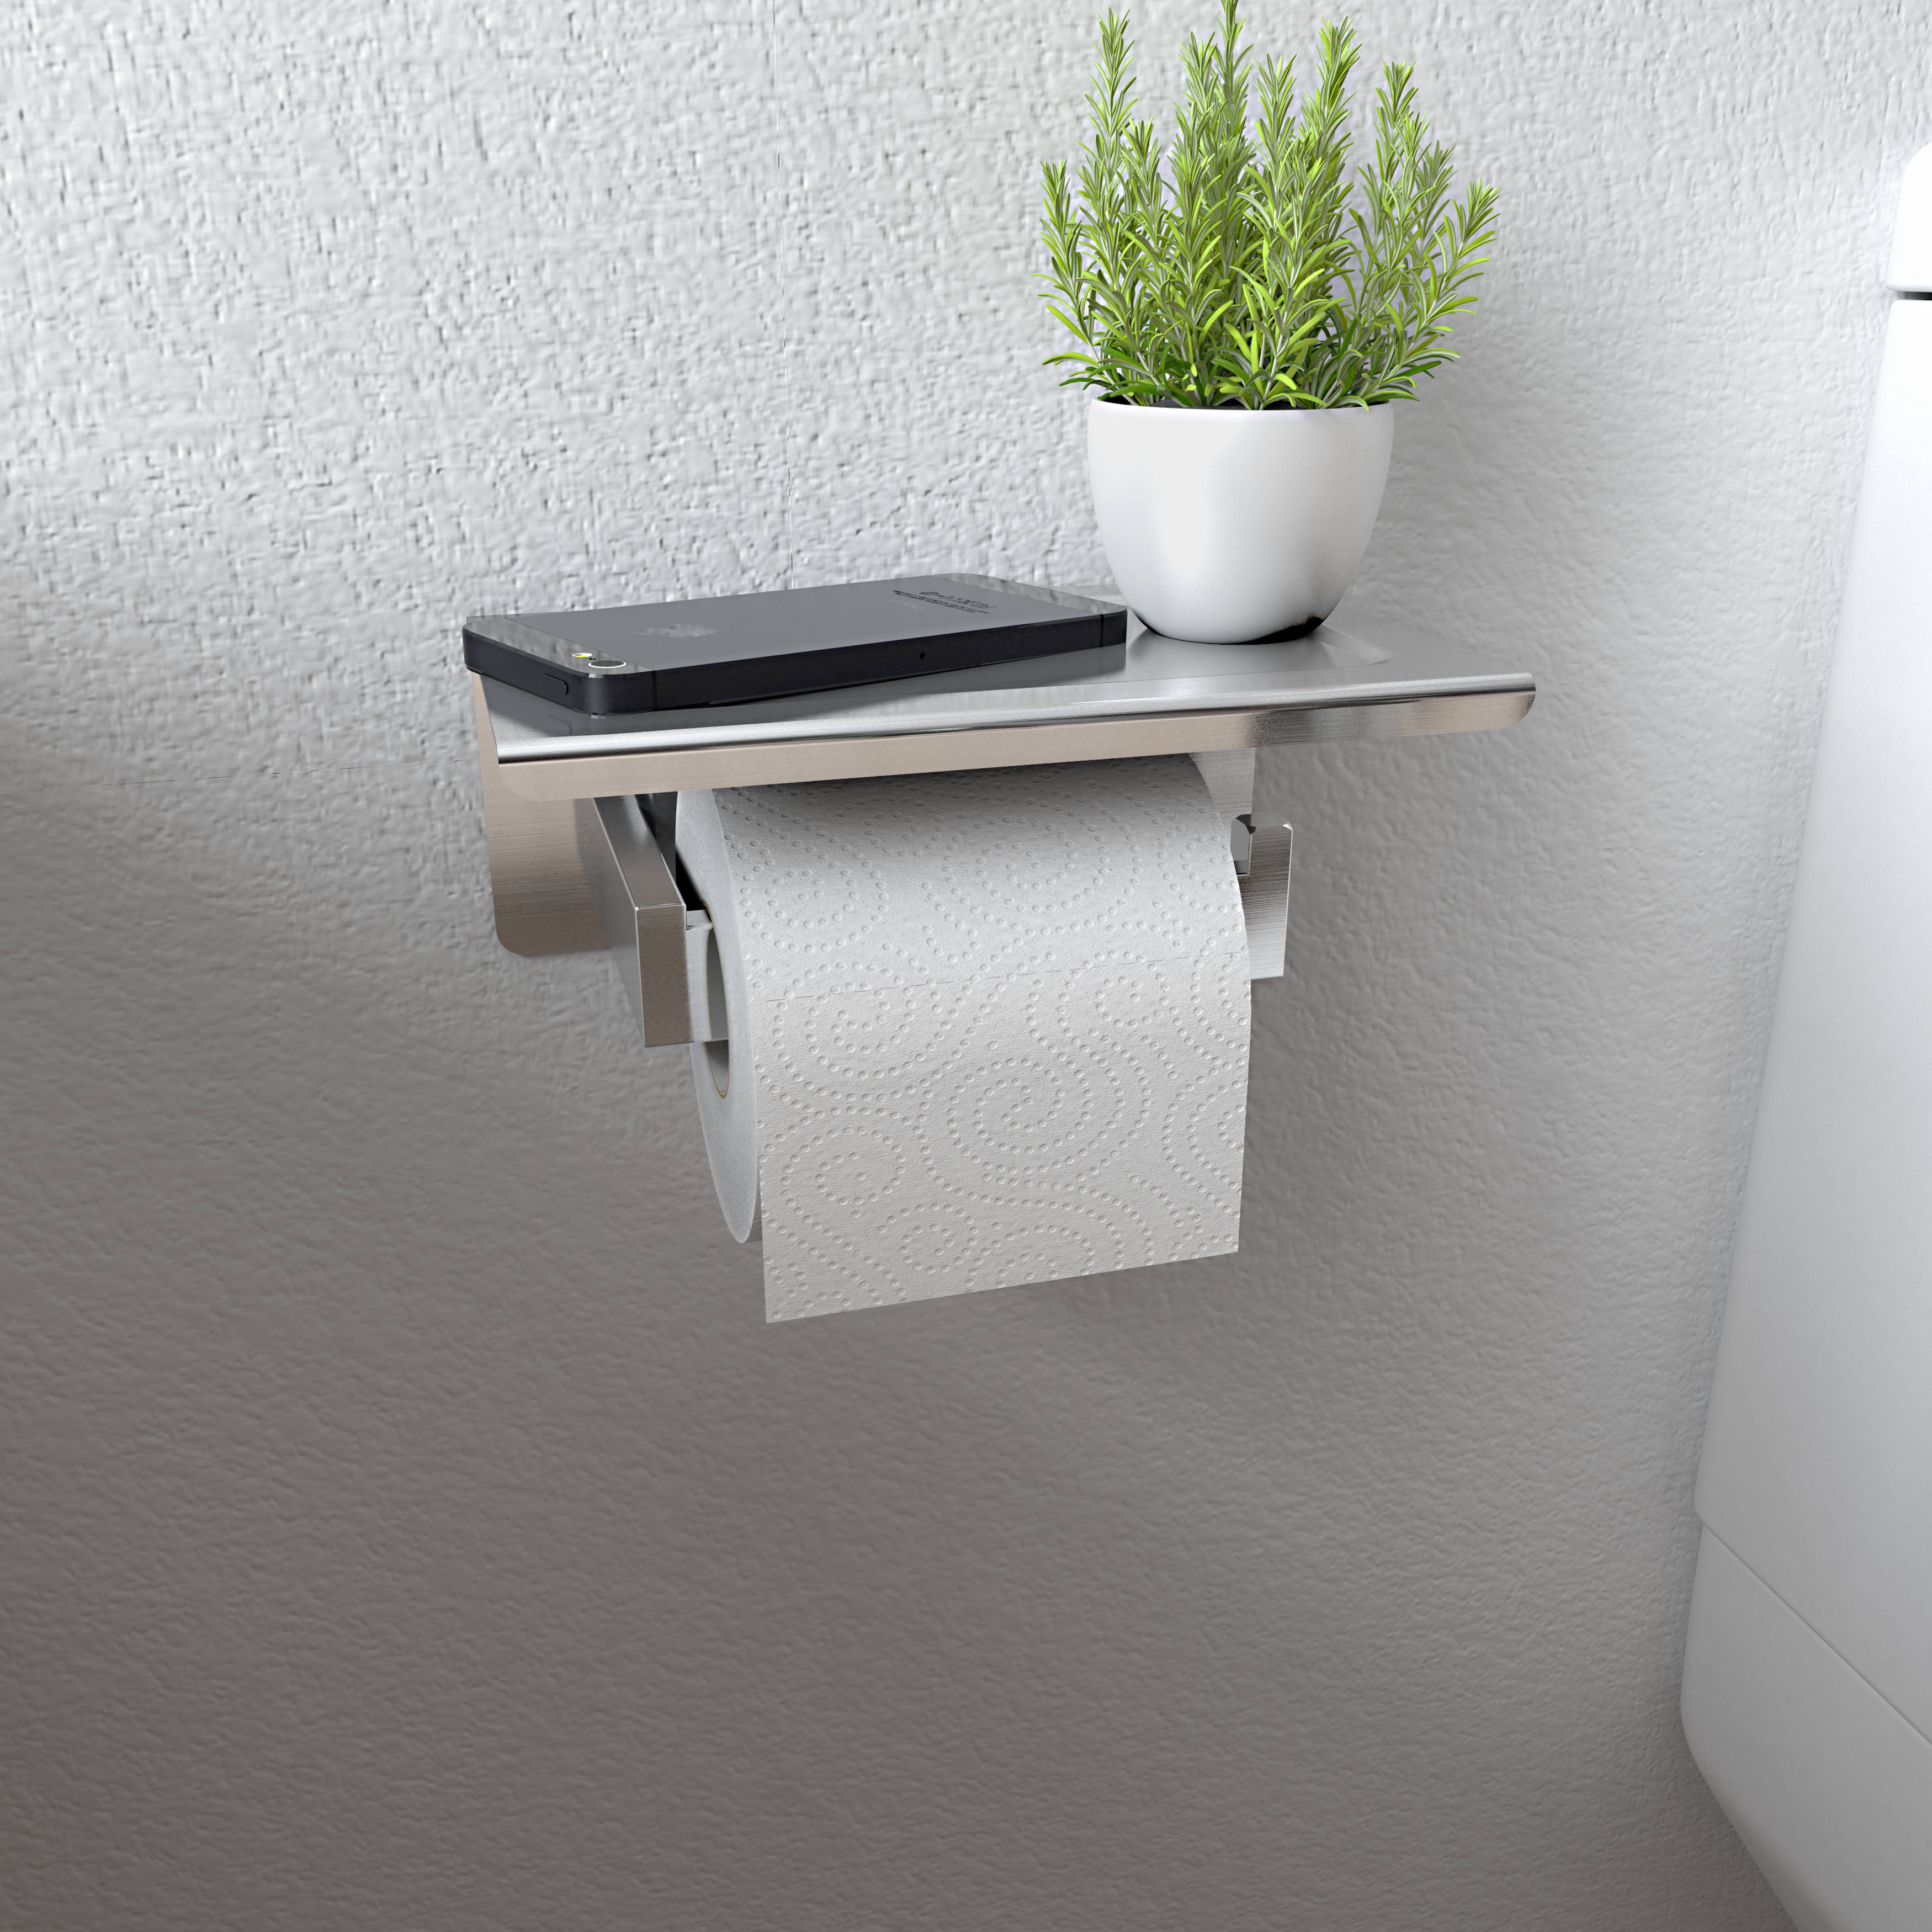 Bad Toilettenpapierhalter mit Ablage Klopapierhalter Klorollenhalter Gebürstet